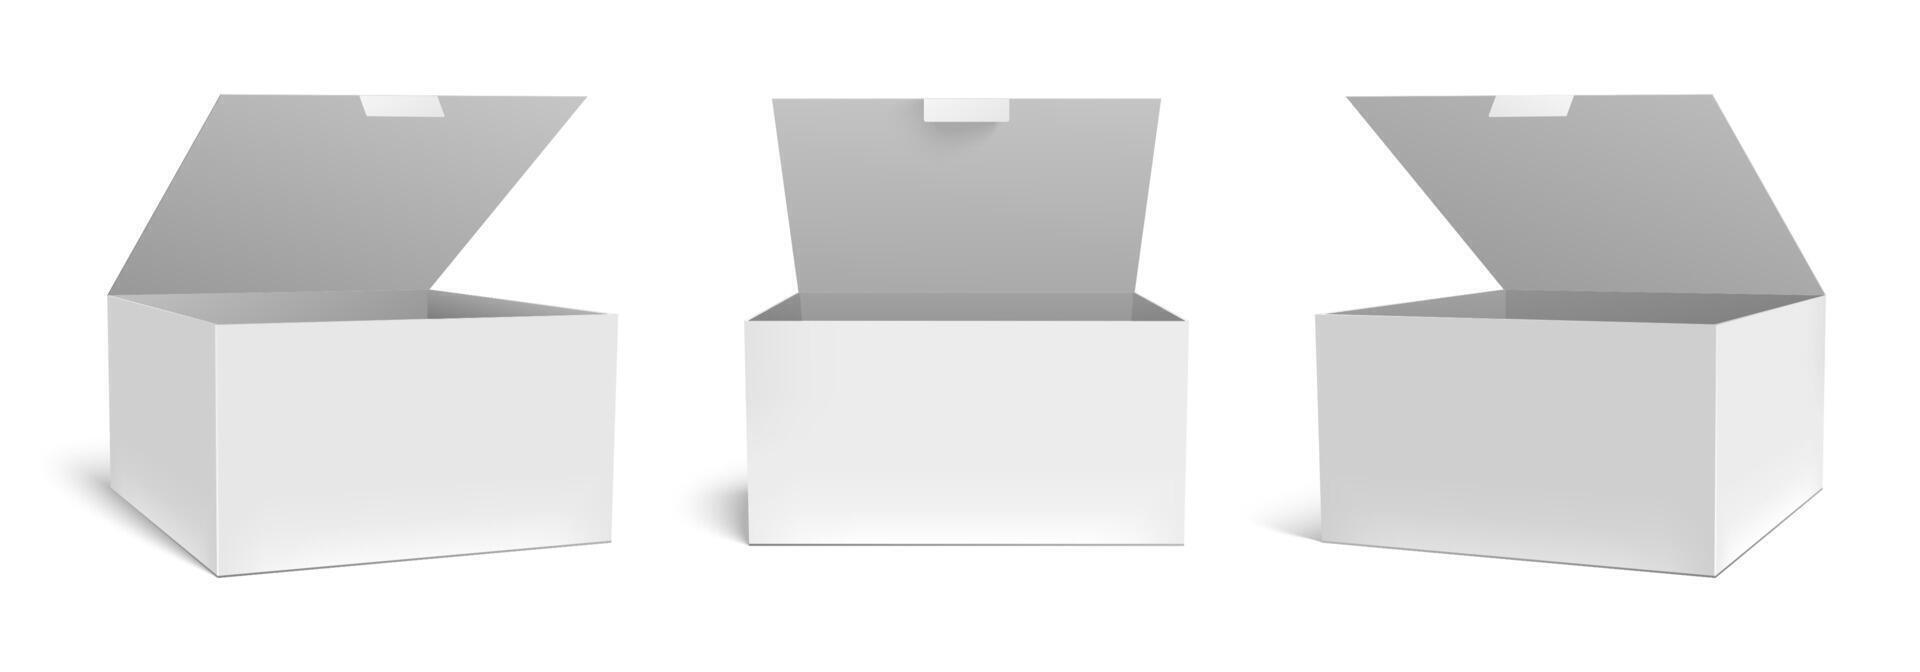 realistisch Open doos model. wit verpakking geschenk dozen, geopend pakket en leeg rechthoekig pakketjes vector sjabloon set. plein karton pakket container, medisch geval karton cliparts verzameling